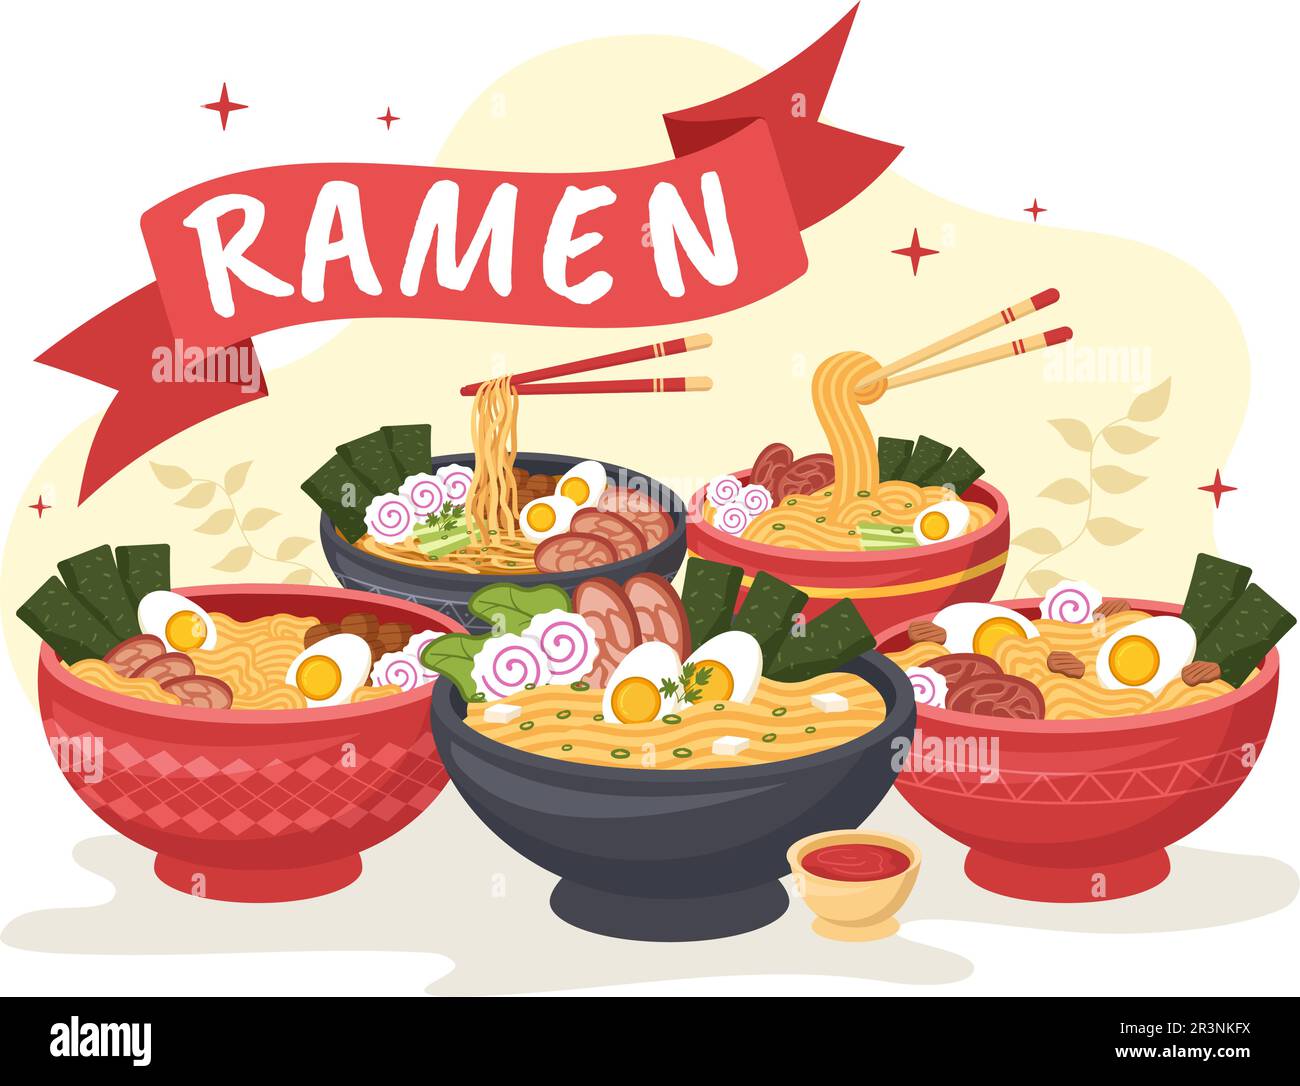 Schéma de ramen Illustration de la nourriture japonaise avec Noodle, Chopsticks, soupe miso, Nori bouillie aux œufs et grillé dans des modèles dessinés à la main Illustration de Vecteur